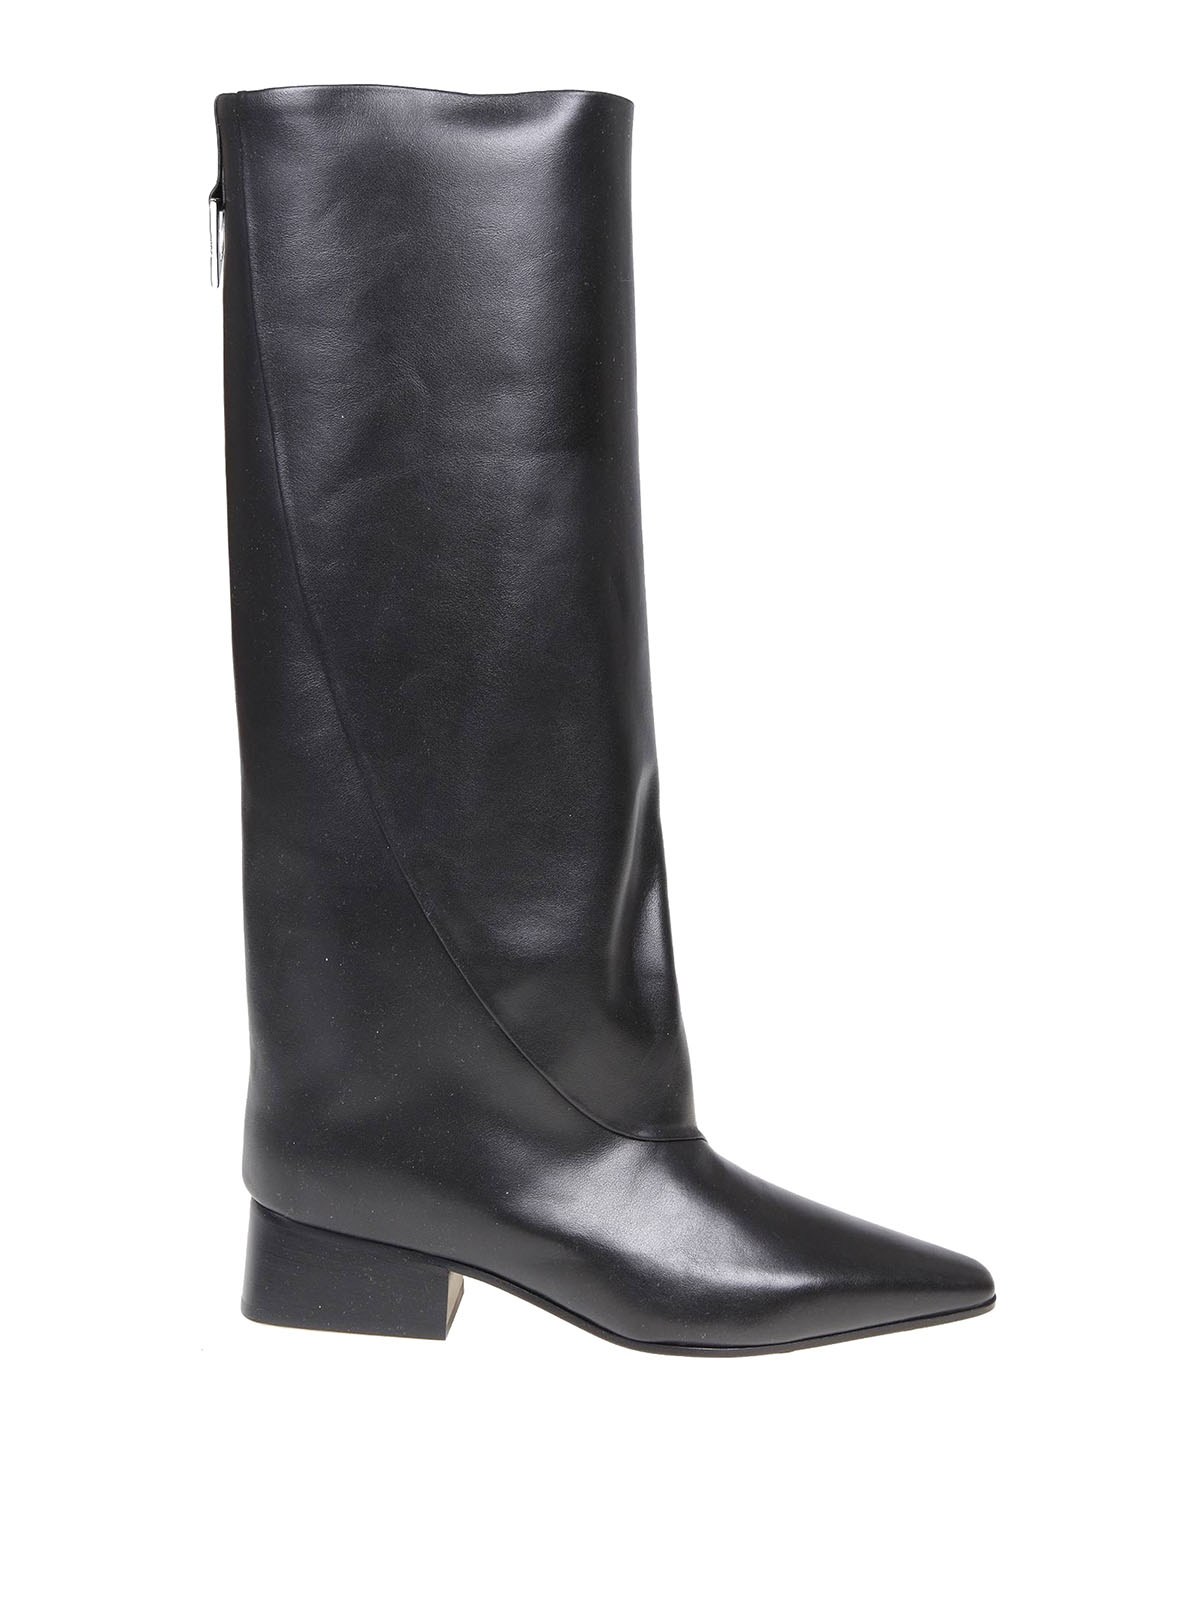 Boots The Attico Ibiza boot in black leather - 228WS524L019100